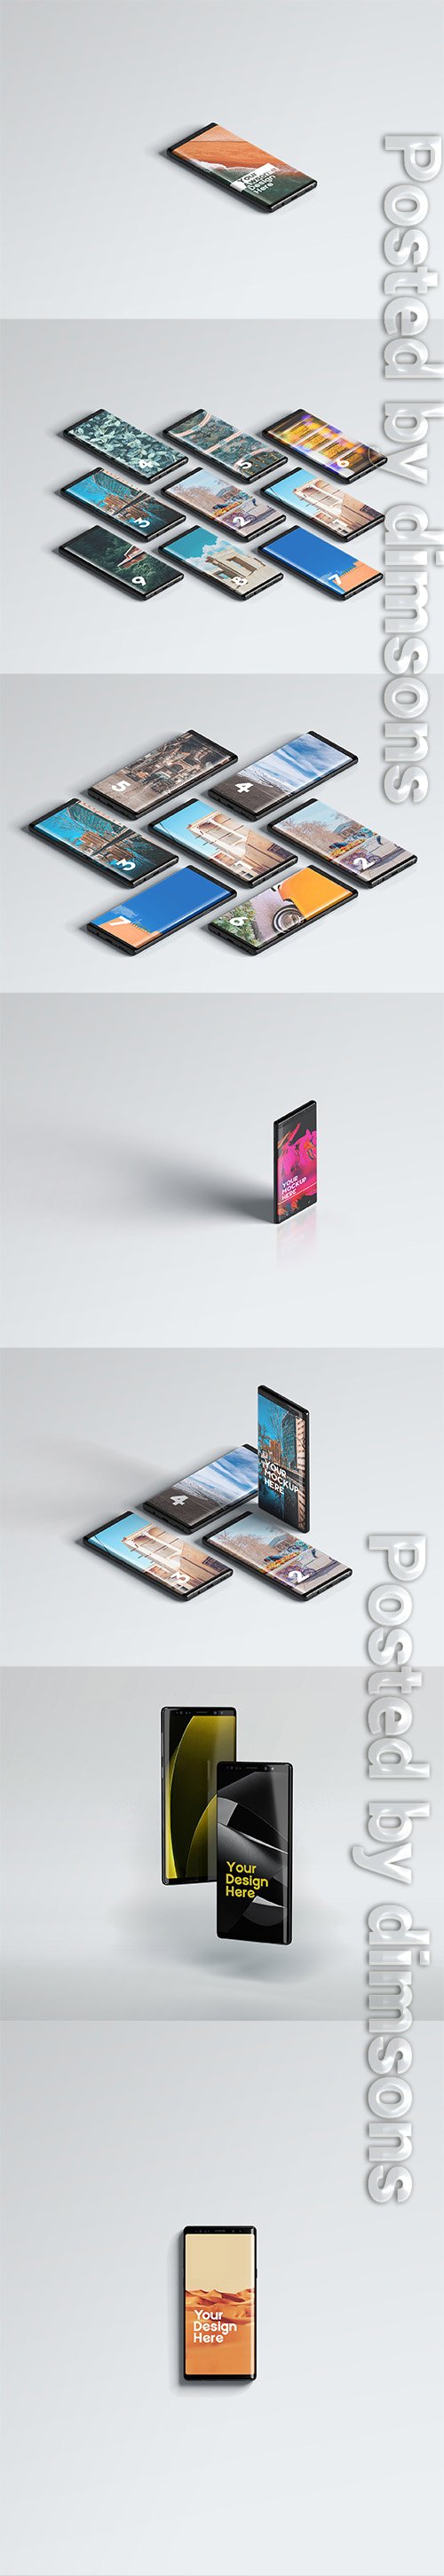 Samsung Galaxy Note9 Mega Pack